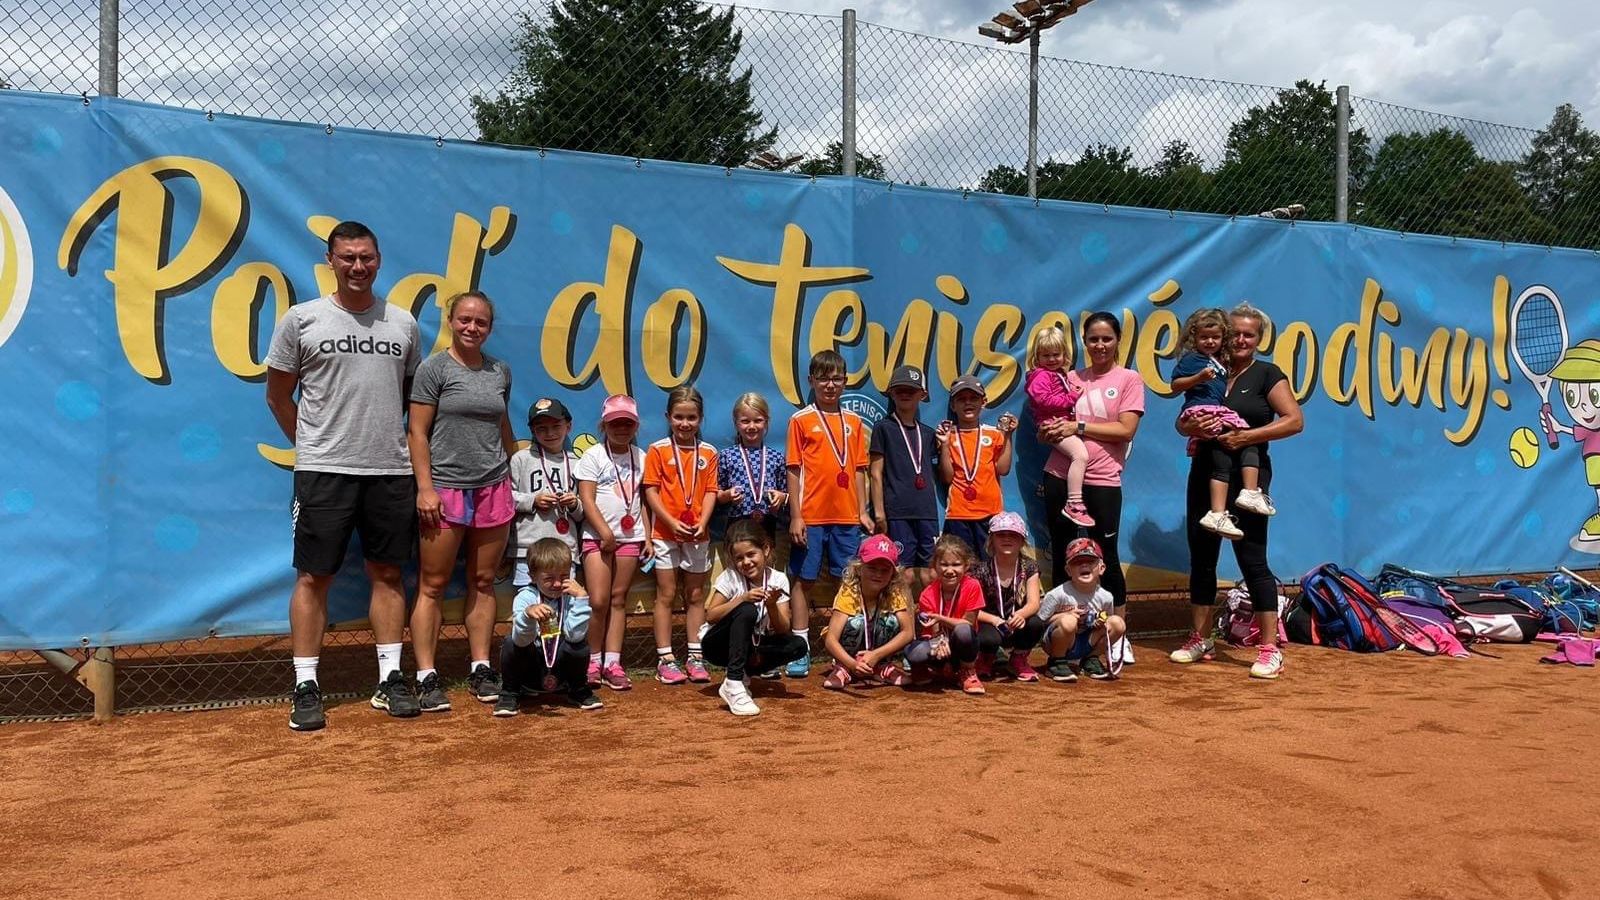 Letní tenisové kempy pro děti: Tenis dětem rozvíjí talent a radost ze hry!